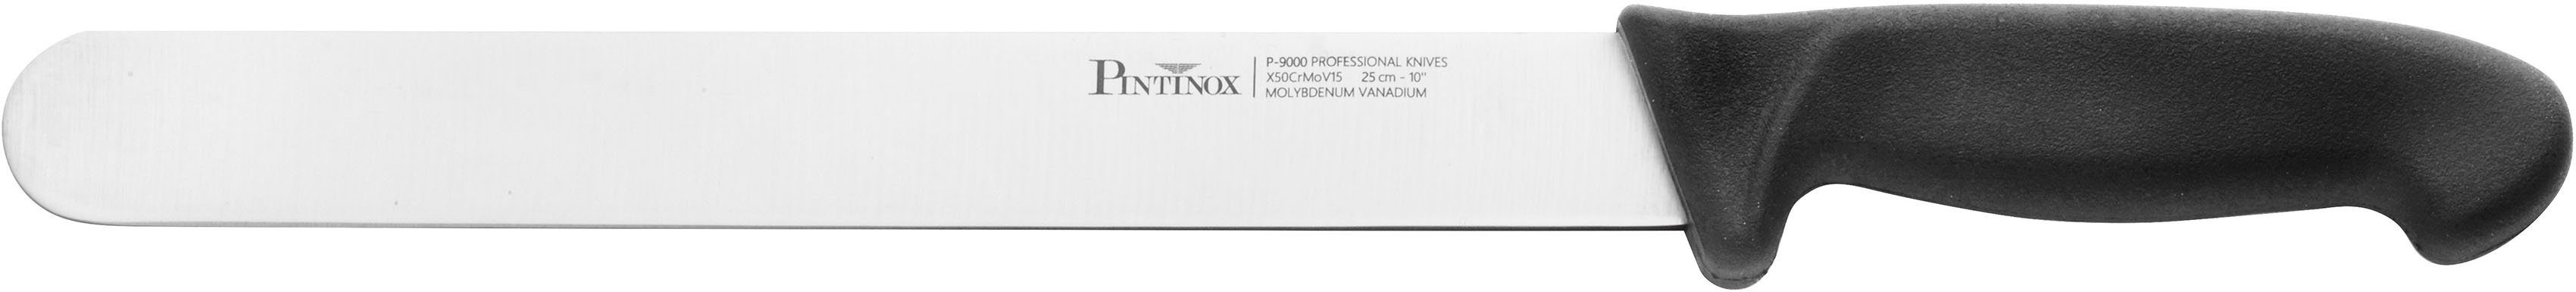 PINTINOX Schinkenmesser Coltelli P9000, Edelstahl/Kunststoff, spülmaschinengeeignet | Schinkenmesser